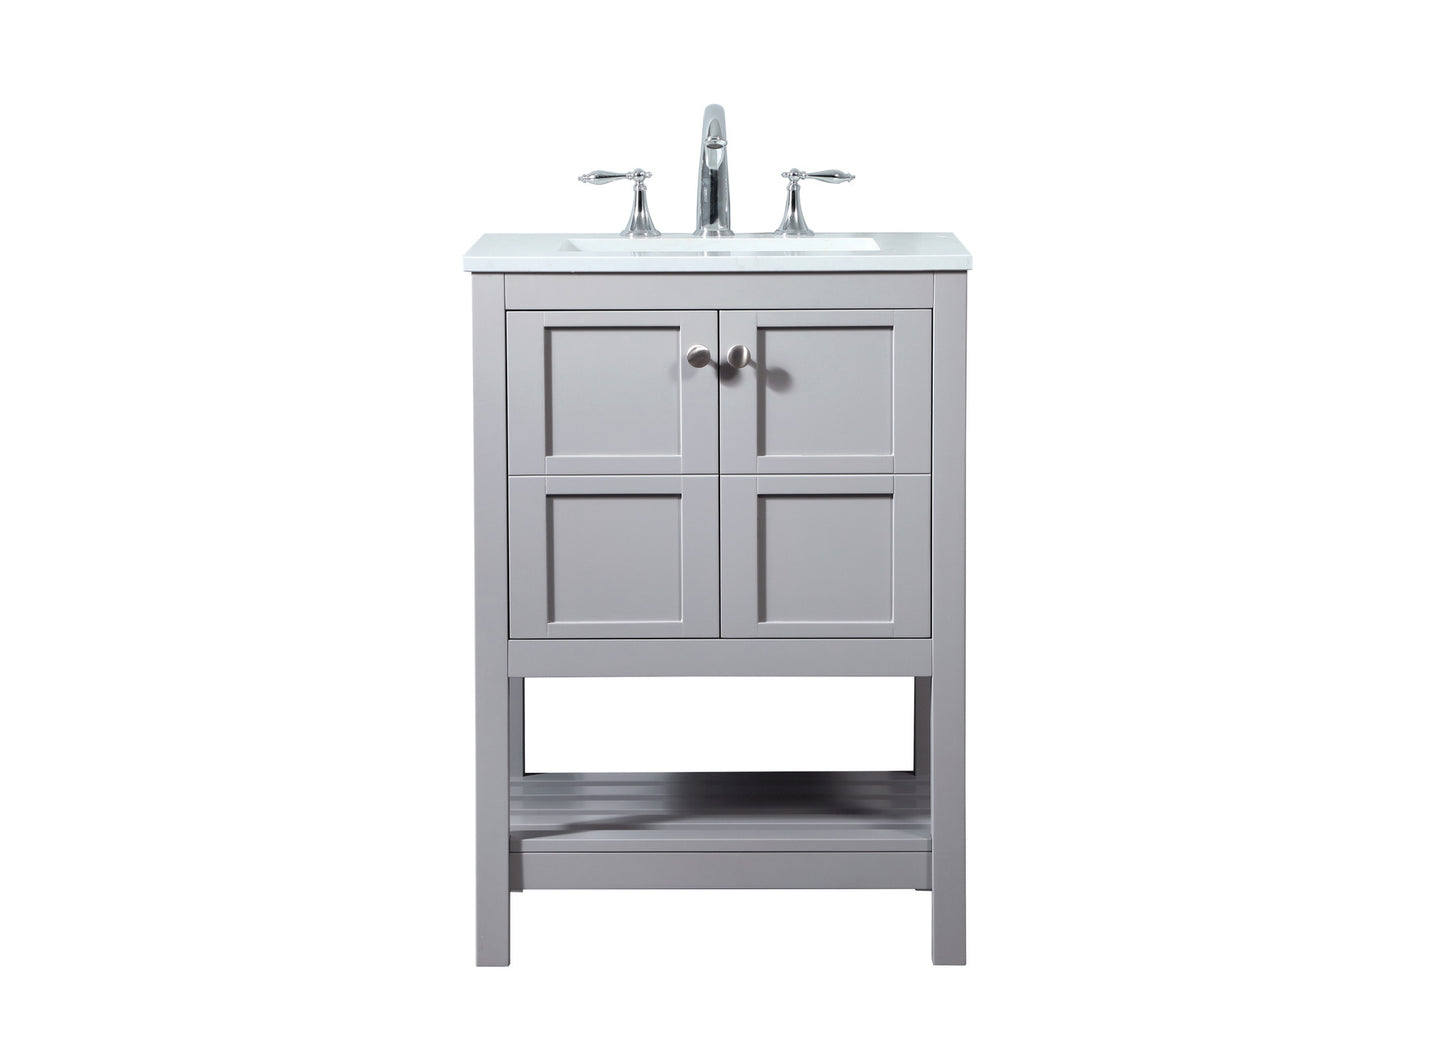 VF16424GR 24" Single Bathroom Vanity in Grey